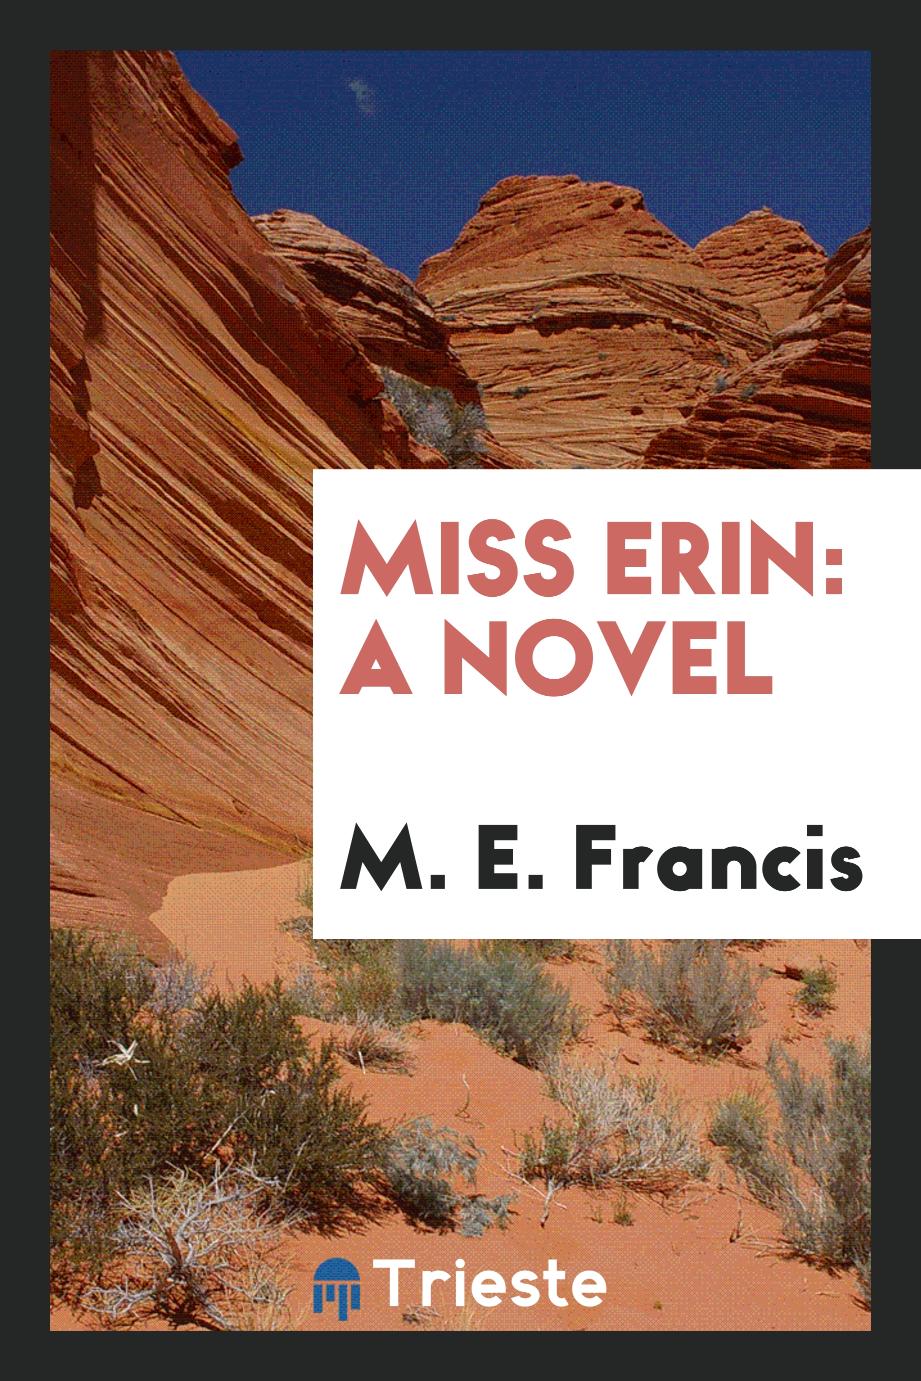 Miss Erin: A Novel